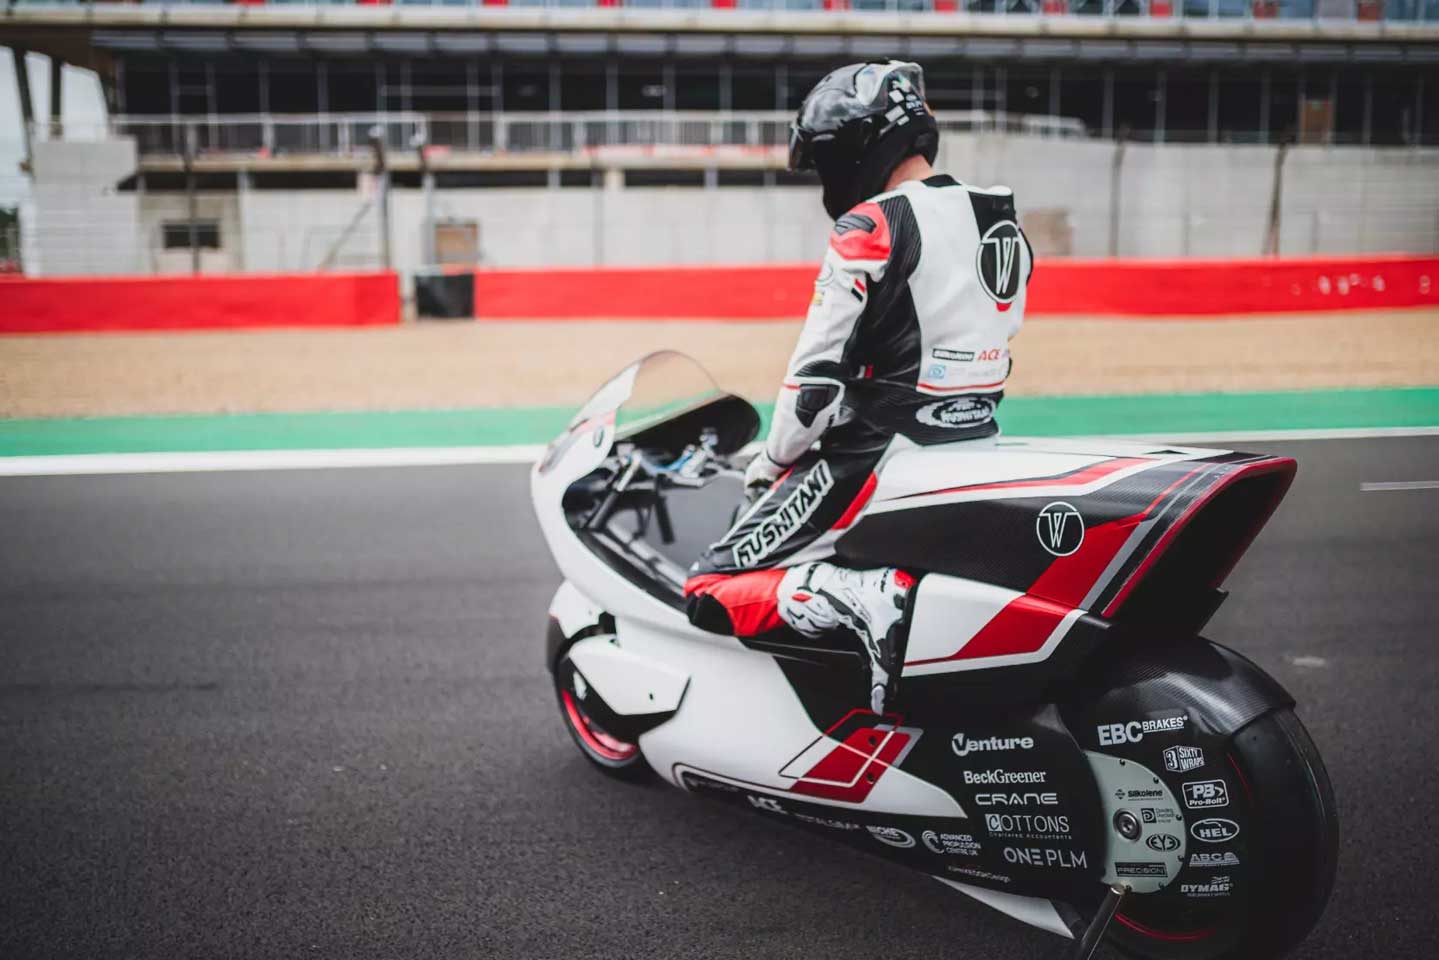 Этот четырехмоторный электрический мотоцикл нацелен на рекорд скорости 400 км / ч.